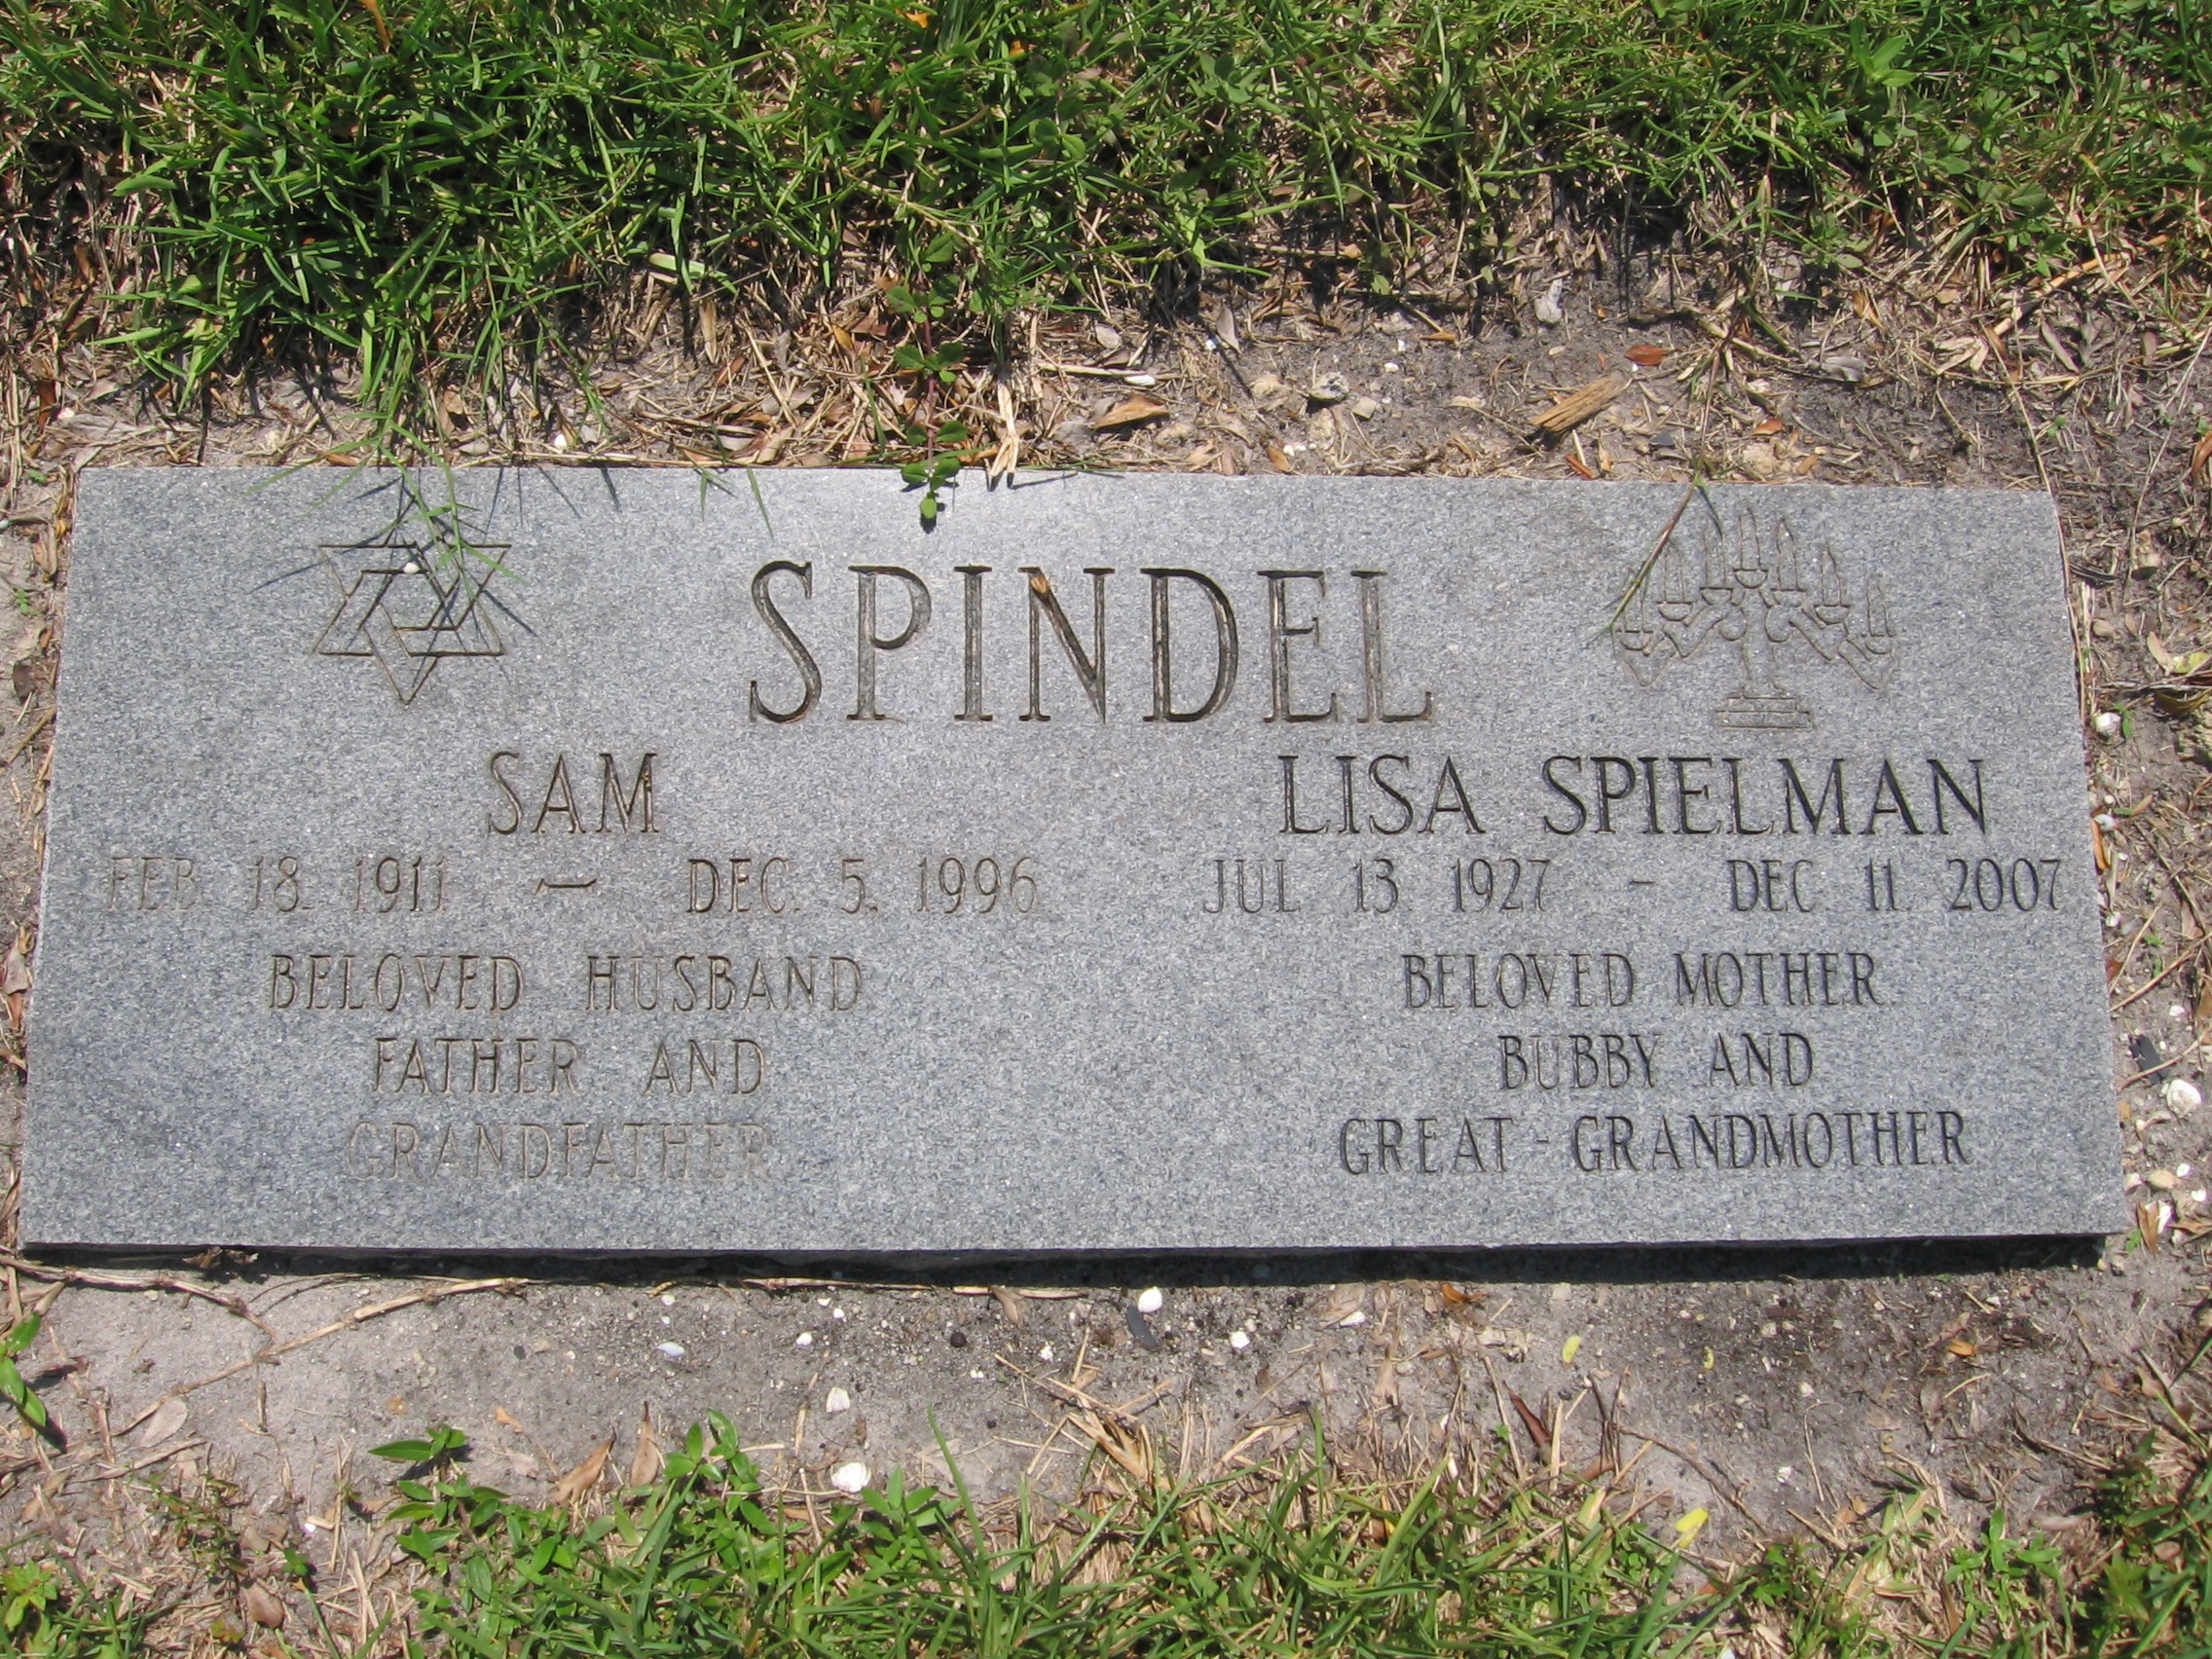 Lisa Spielman Spindel